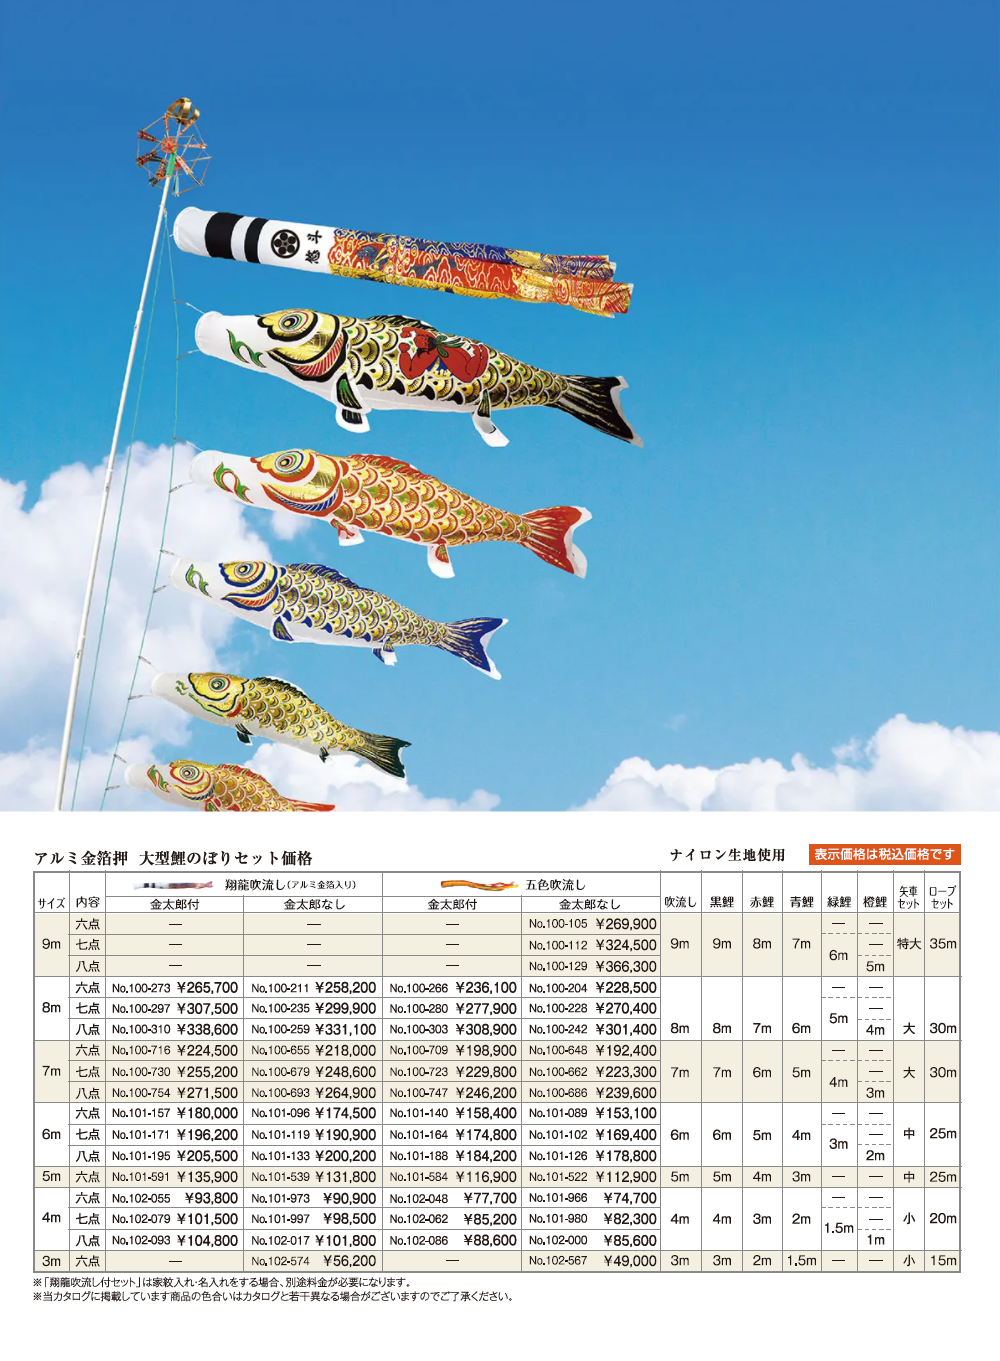 アルミ金箔押　大型鯉のぼりセットの画像と価格表